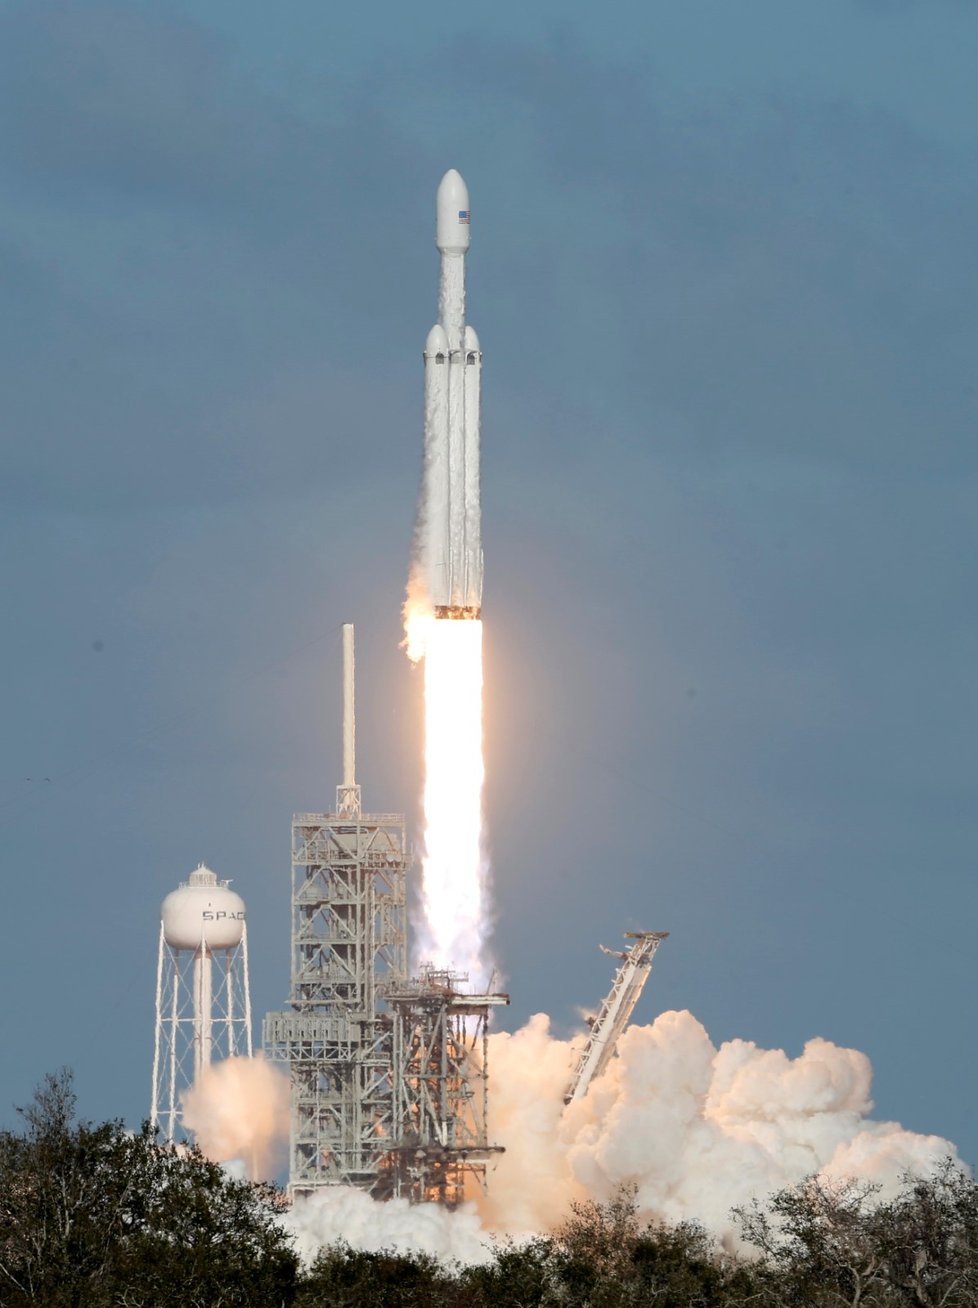 Raketa Falcon Heavy společnosti SpaceX vizionáře Elona Muska za sebou má úspěšný testovací start, během kterého do vesmíru vynesla i elektromobil Tesla Roadster